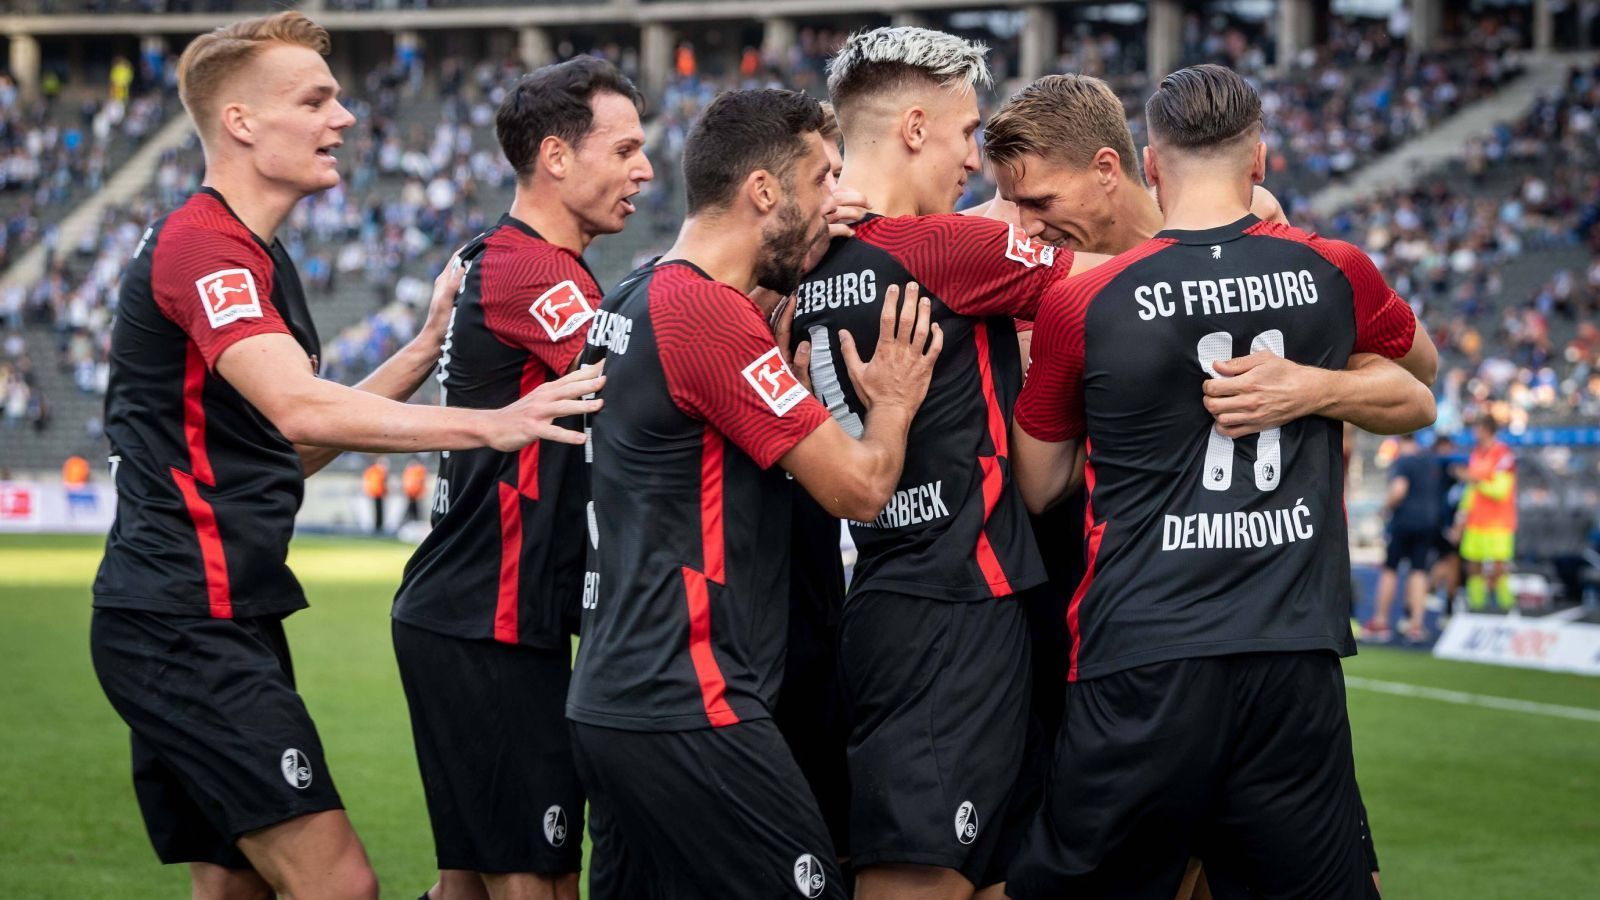 
                <strong>SC Freiburg (Deutschland)</strong><br>
                Das einzige ungeschlagene Team der Bundesliga ist der Sport-Club Freiburg. Die Mannschaft von Christian Streich hat von den bisherigen sieben Saisonspielen vier gewonnen, die anderen drei endeten Unentschieden. Unter anderem besiegten die Breisgauer Borussia Dortmund mit 2:1, auch im DFB-Pokal bei den Würzburger Kickers war der SCF ebenfalls siegreich. In der Tabelle ist es nur ein Punkt Rückstand auf den FC Bayern an der Tabellenspitze.
              